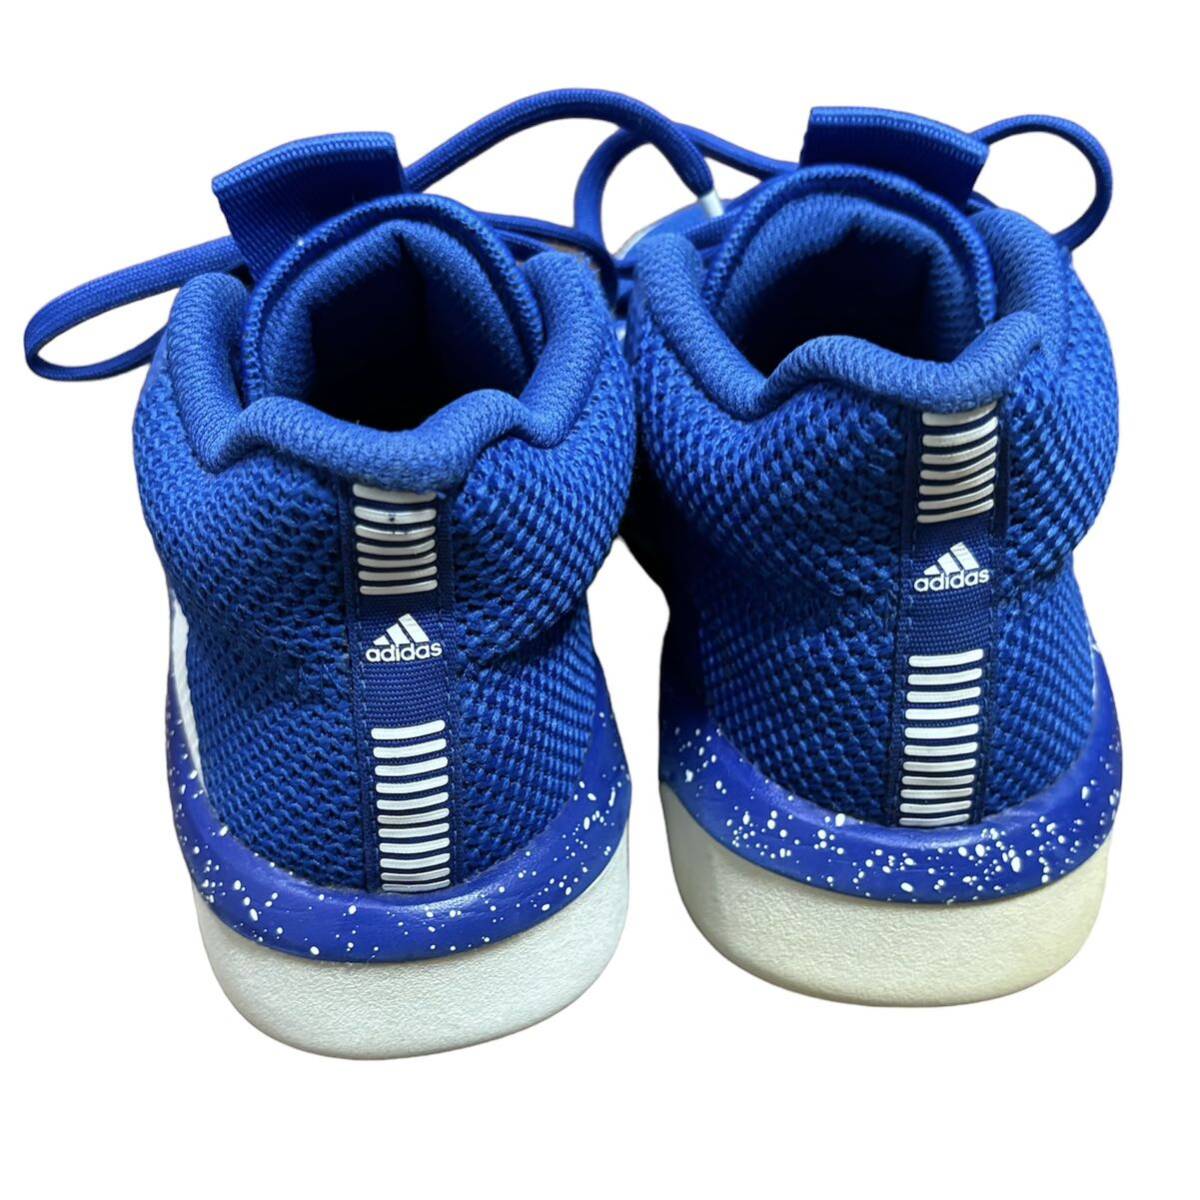 アディダス【バスケットシューズ】adidas スニーカー 22.5cm 中古 靴 子供 キッズ ブルー ミニバス バッシュ 使用回数10回程度_画像4